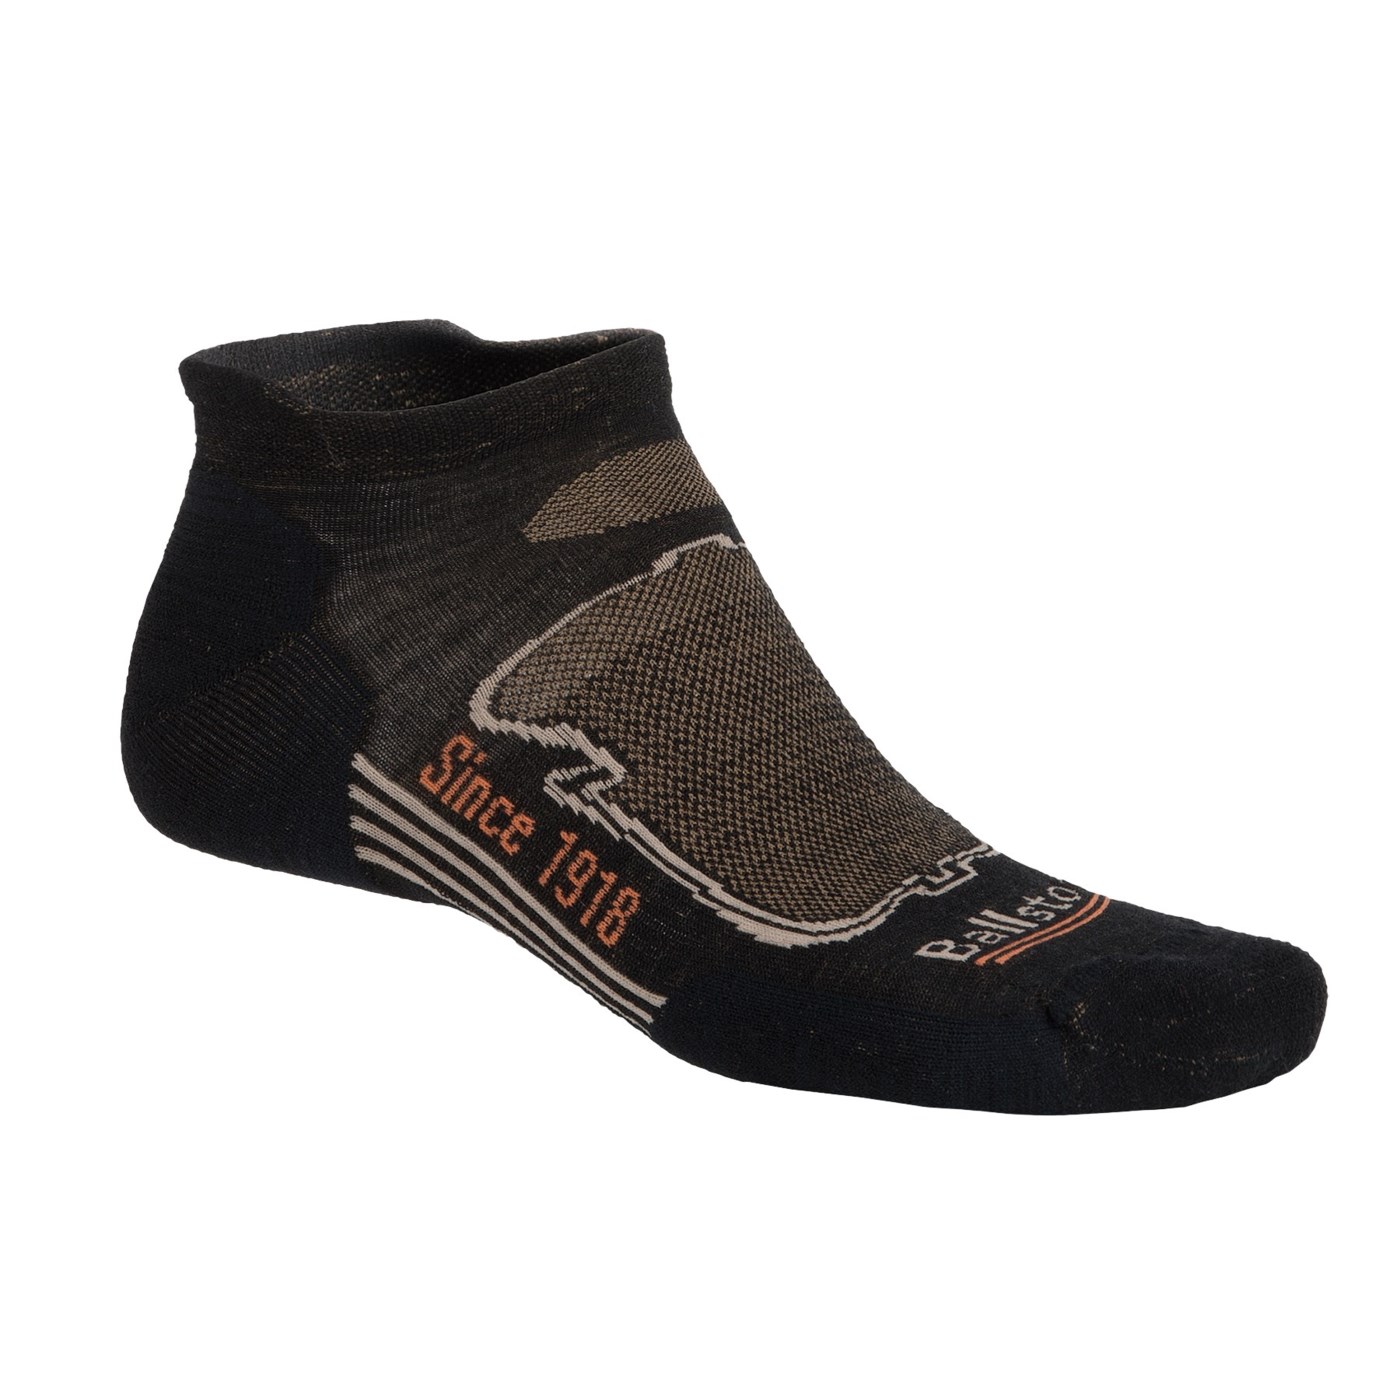 Ballston High Performance Tab Socks (For Men) 9274M 50